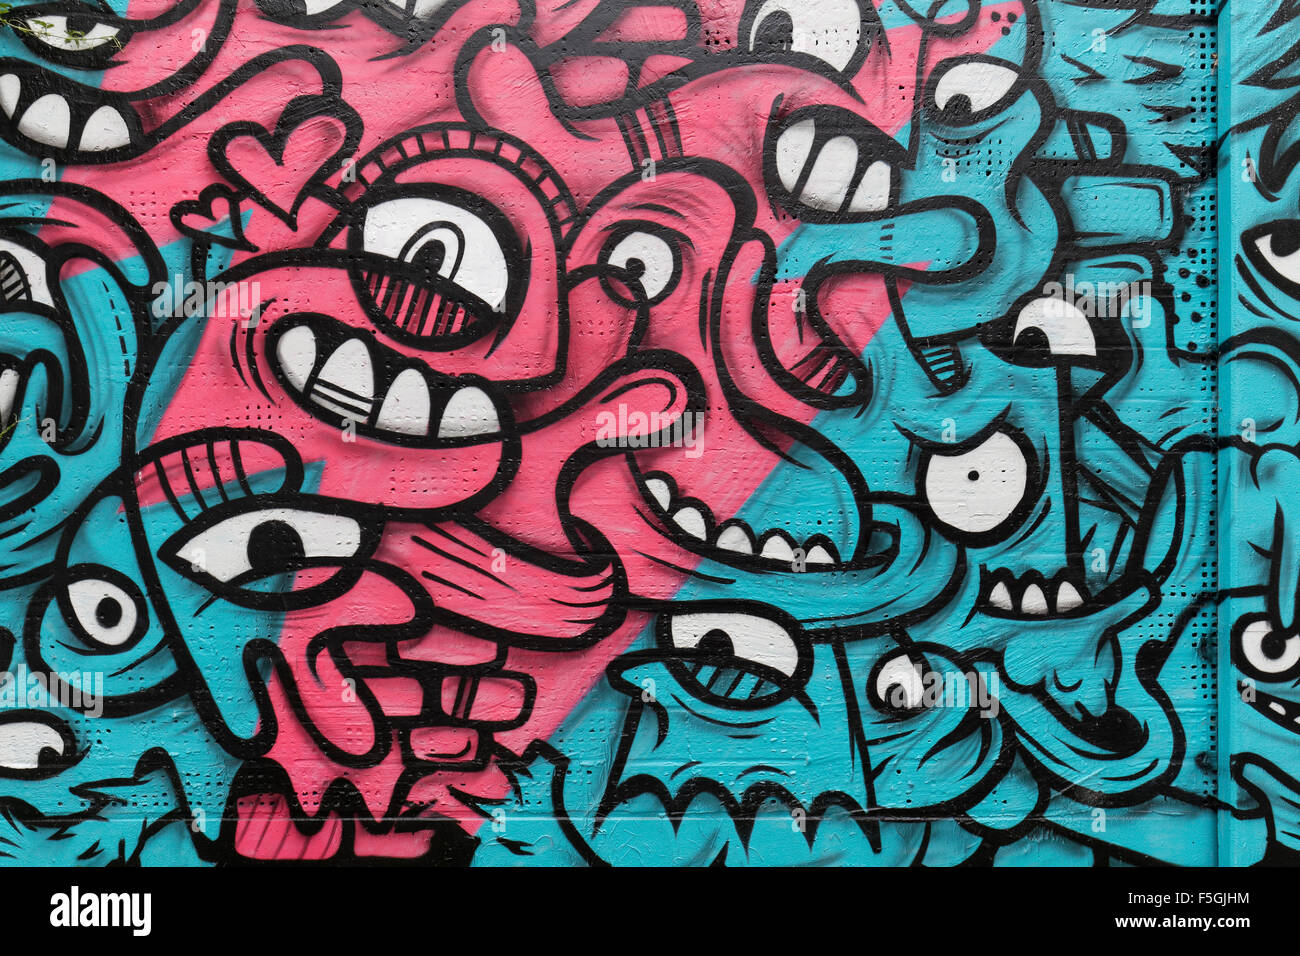 Schéma des visages entrelacés, graffiti, street art, Art Urbain Grad 40 Festival, Düsseldorf, Rhénanie du Nord-Westphalie, Allemagne Banque D'Images